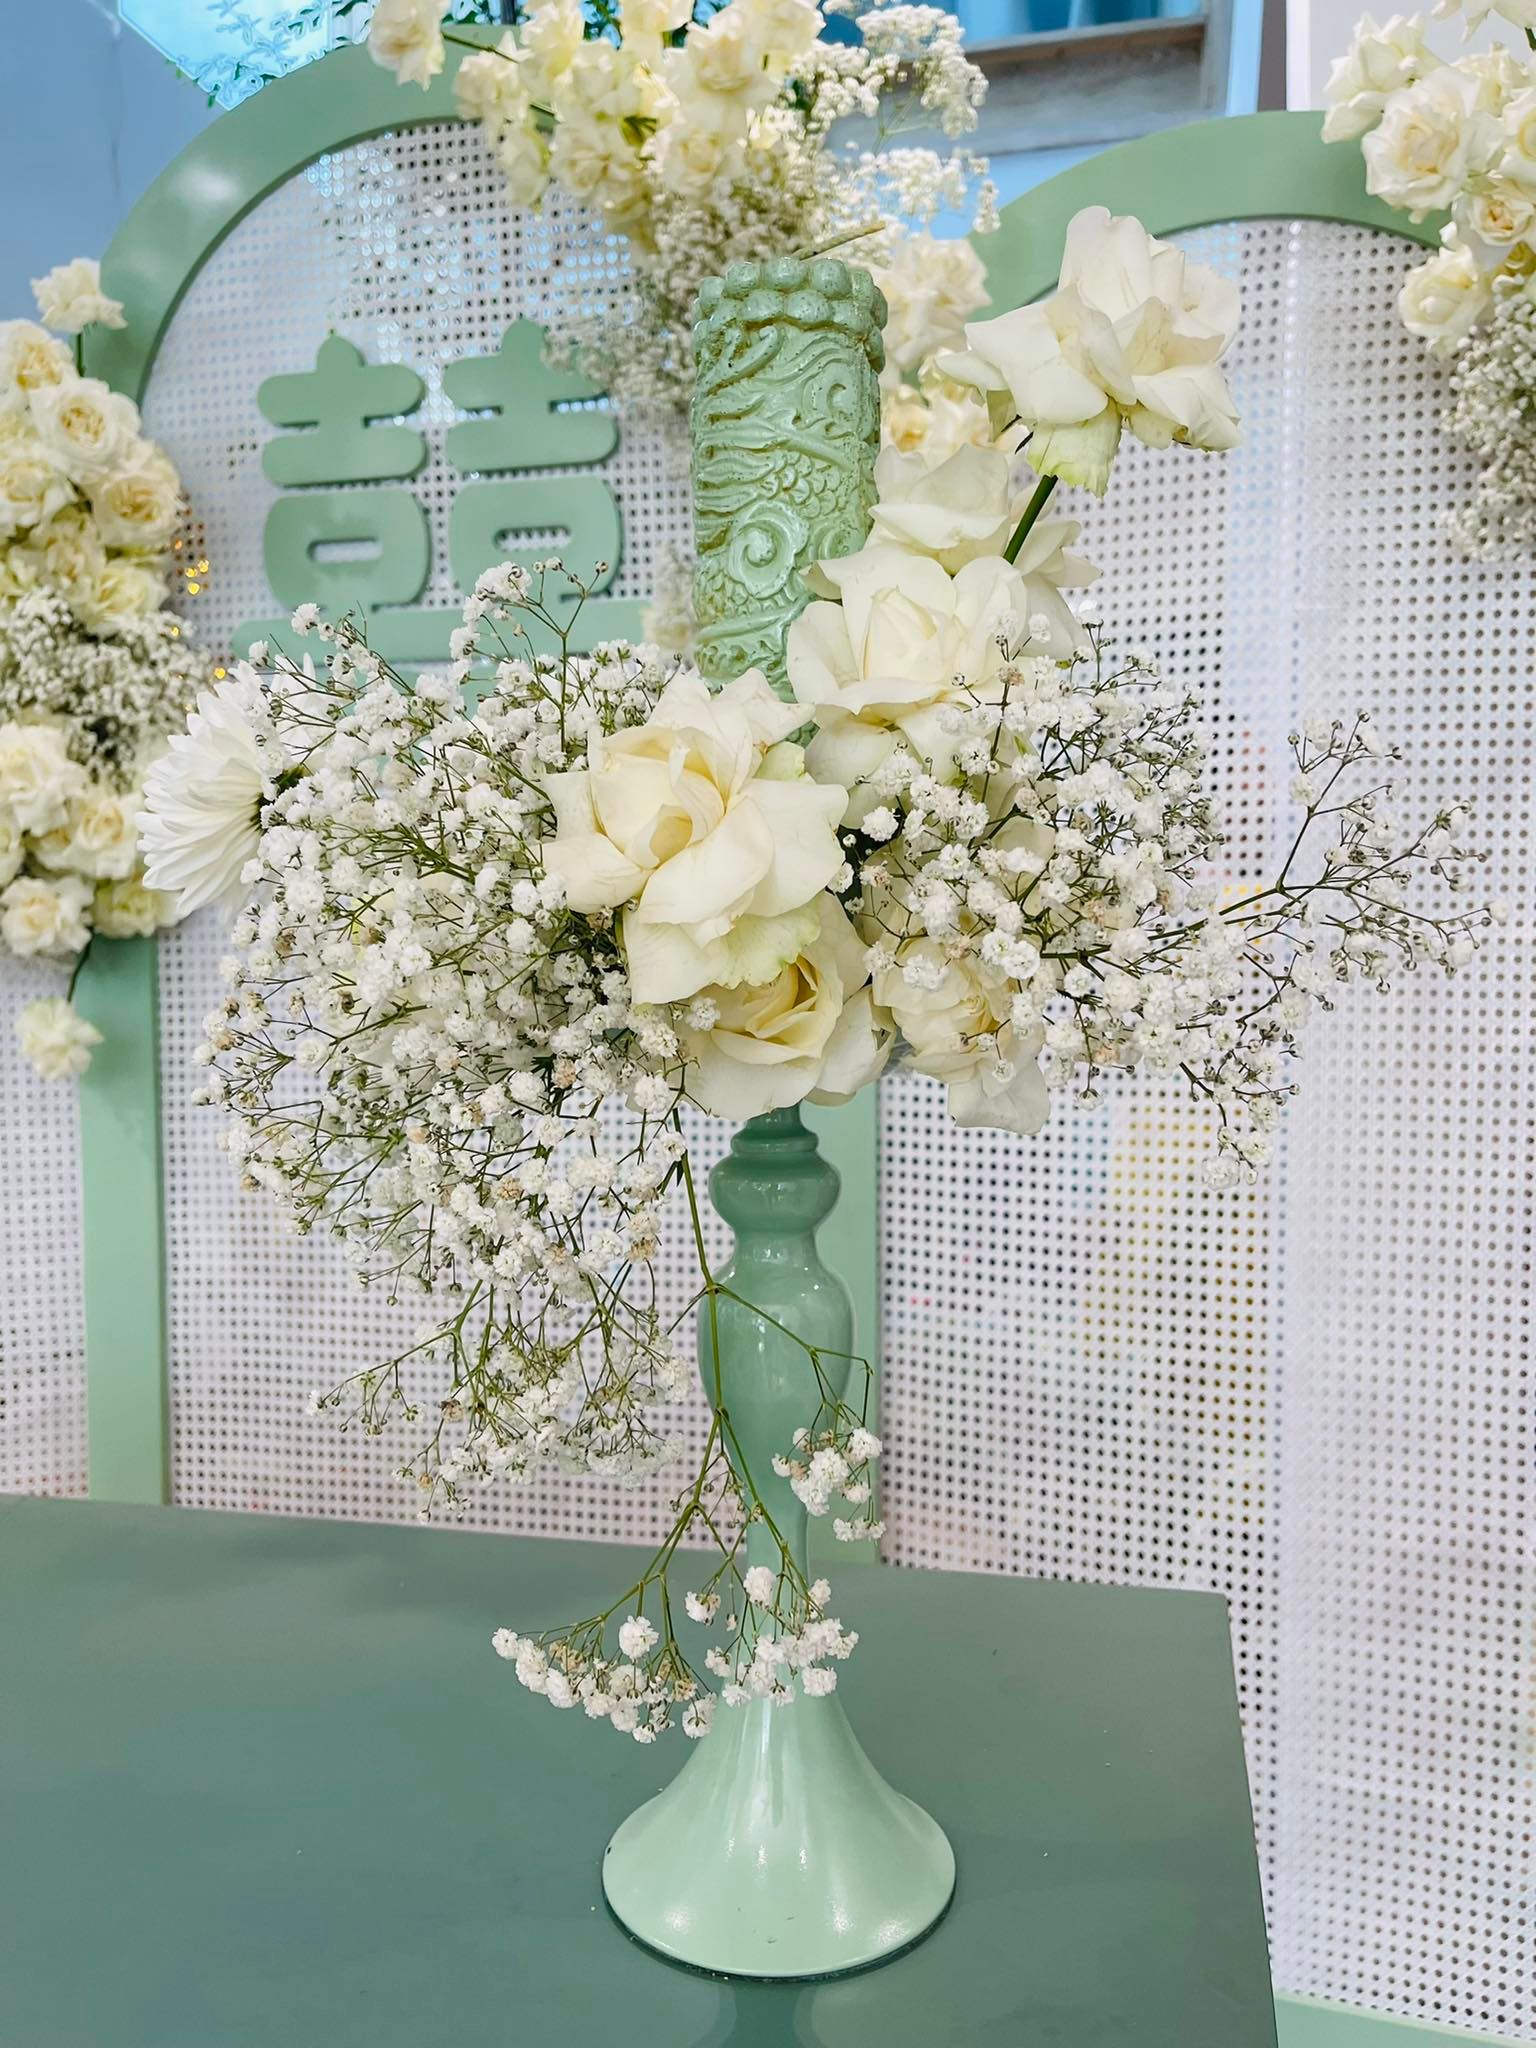 Đám cưới Phương Trinh Jolie - Lý Bình: Nhà riêng trang hoàng đầy hoa tươi, tông màu cưới xanh mint quá xinh-10